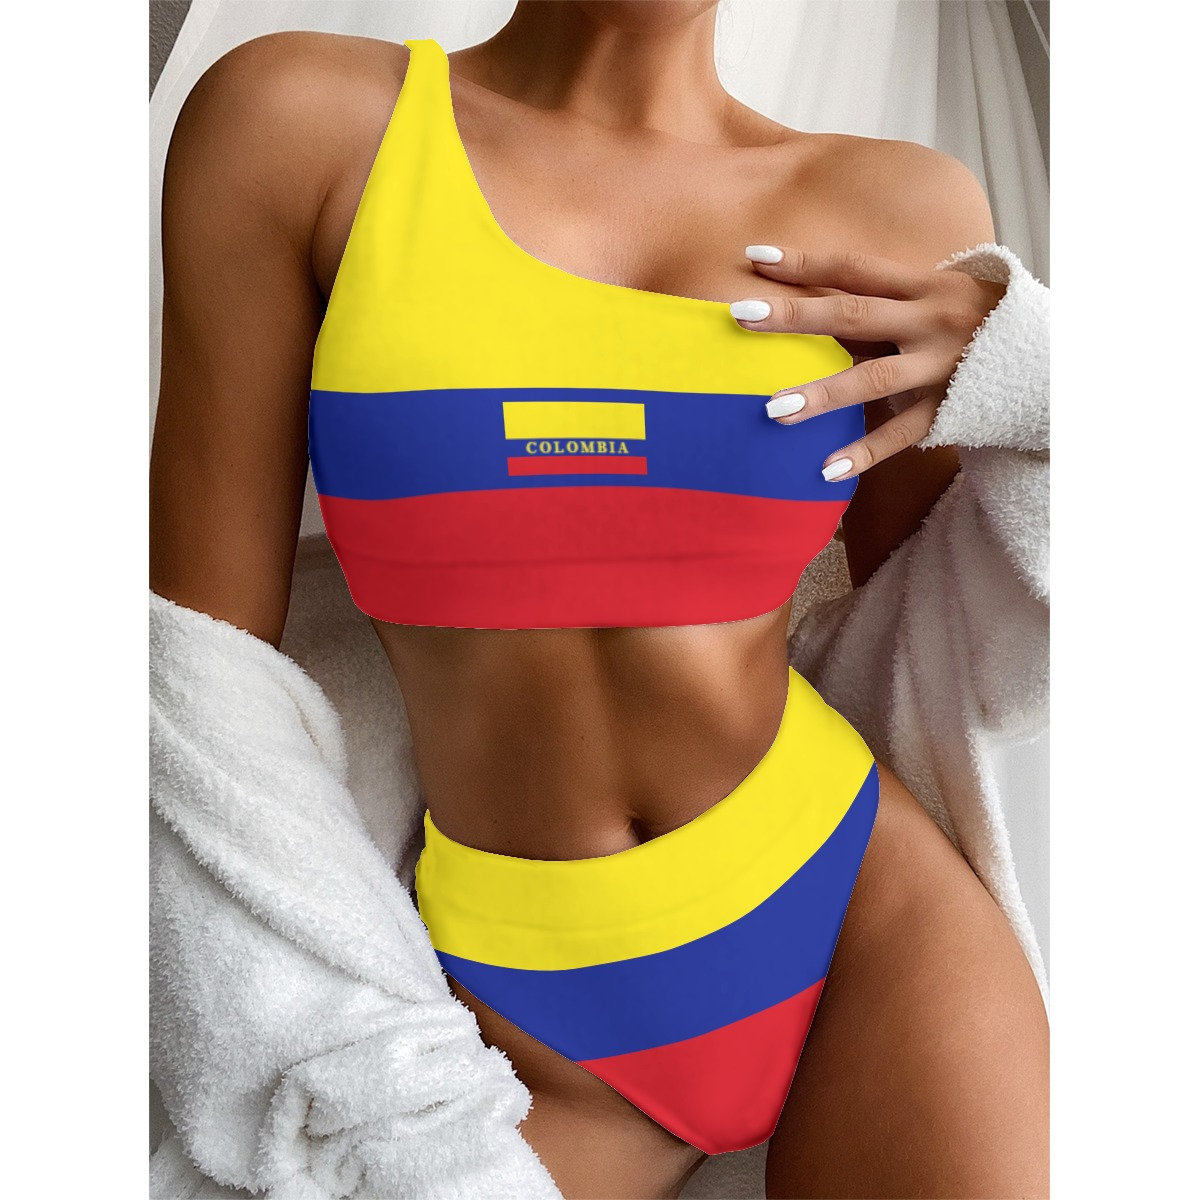 Colombian Women's Bikini, Colombia, Flag, Women, Ladies, Teens